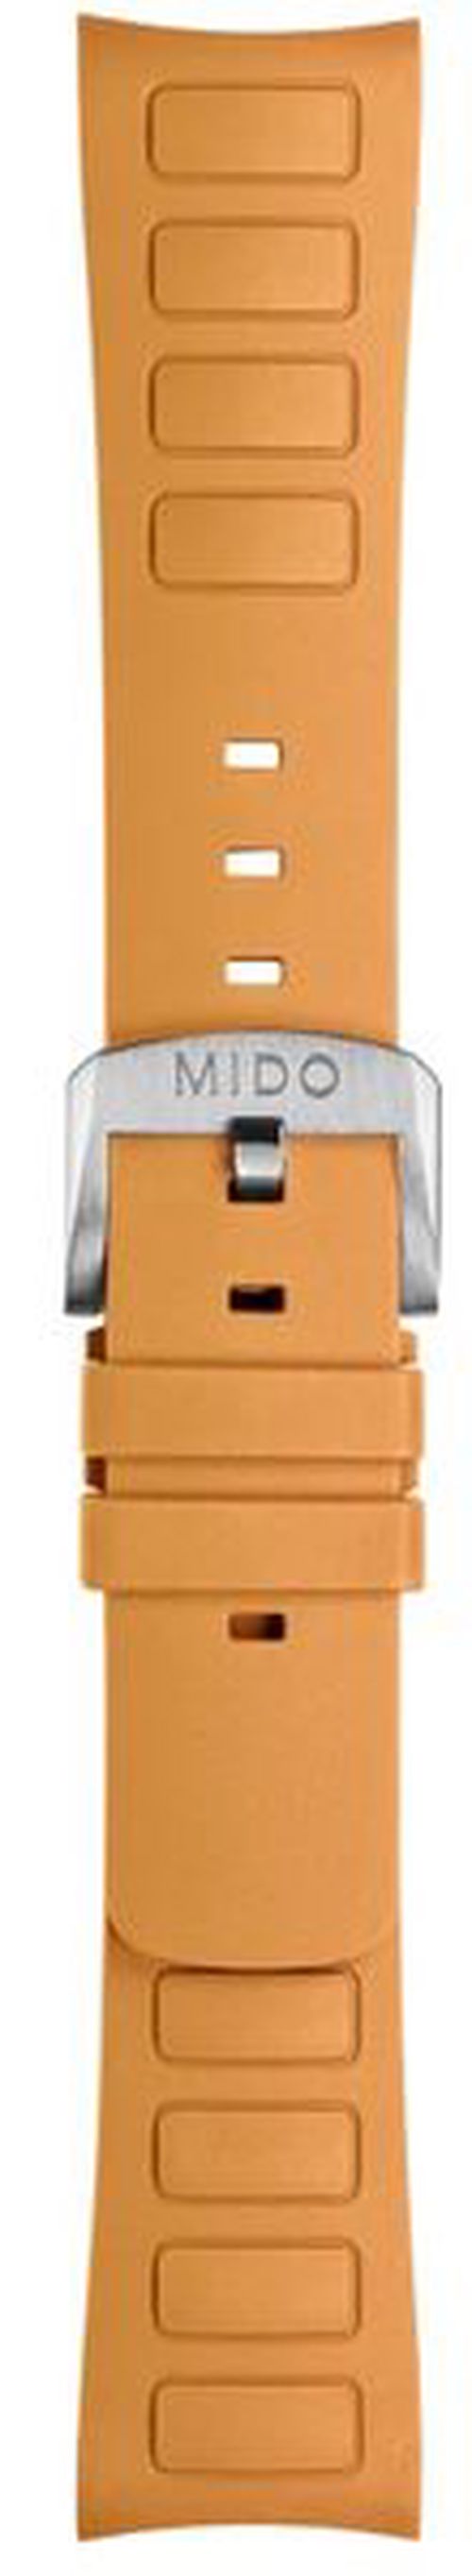 Řemínek Mido M603018730 oranžový k modelům Mido Multifort TV Big Date